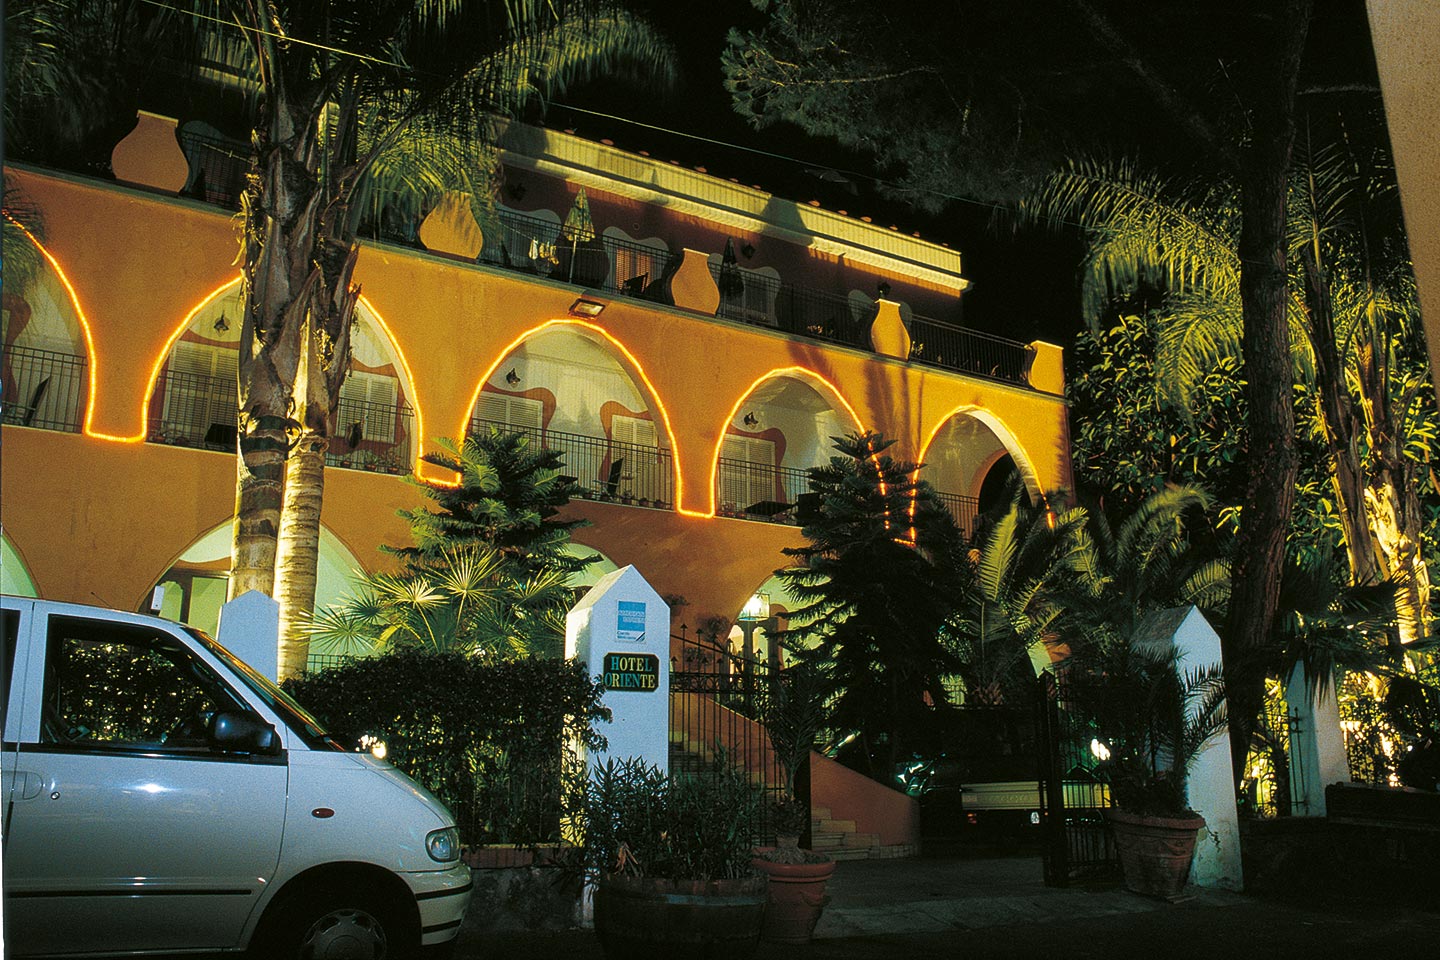 Das Hotel Oriente by night